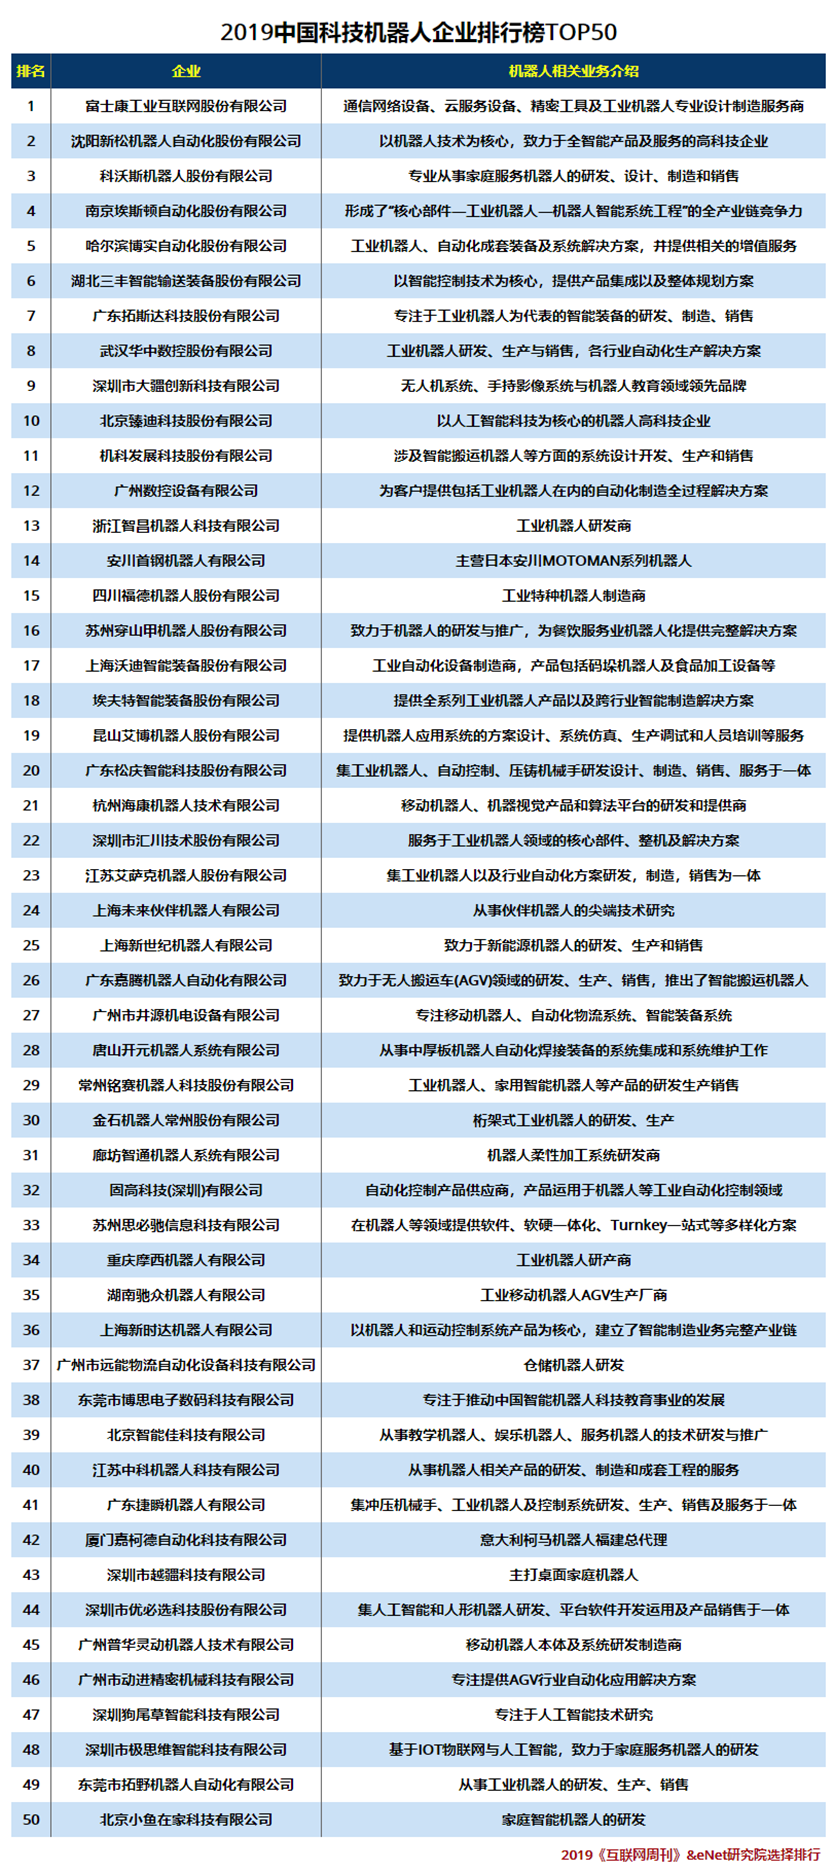 2019中国科技机器人企业排行榜TOP50.png